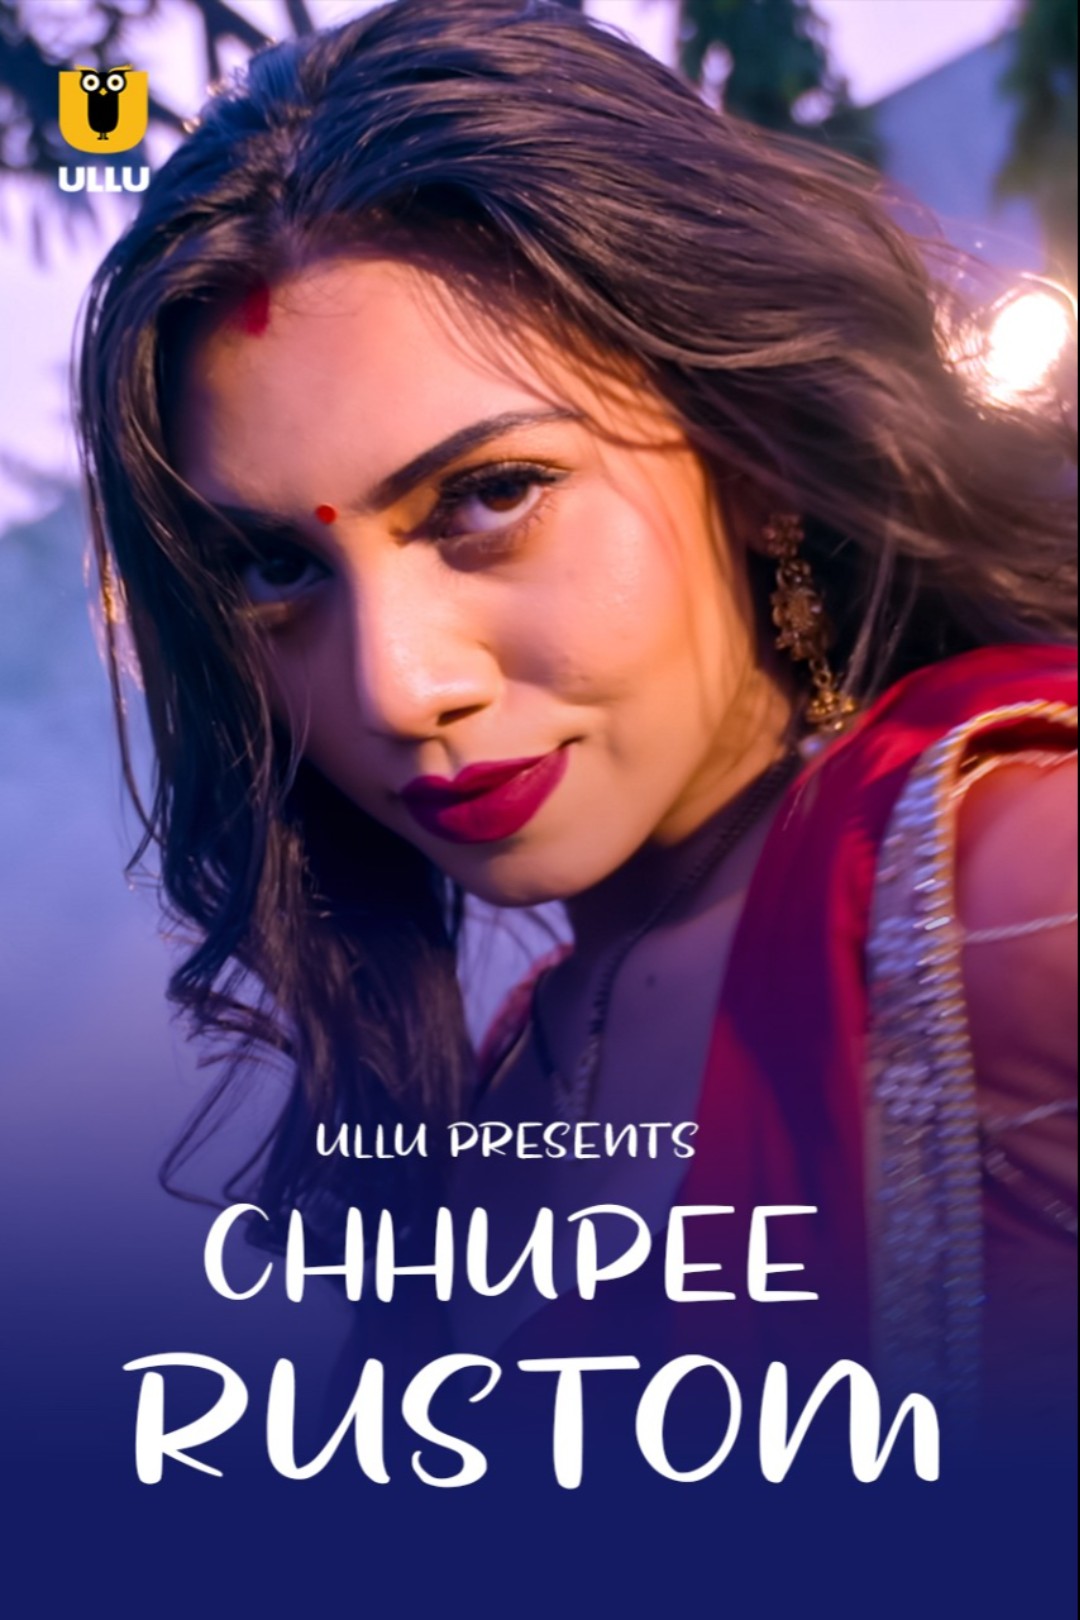 18+ Chhupee Rustom 2021 S01 Hindi Ullu Originals Complete Web Series 720p HDRip 300MB Download